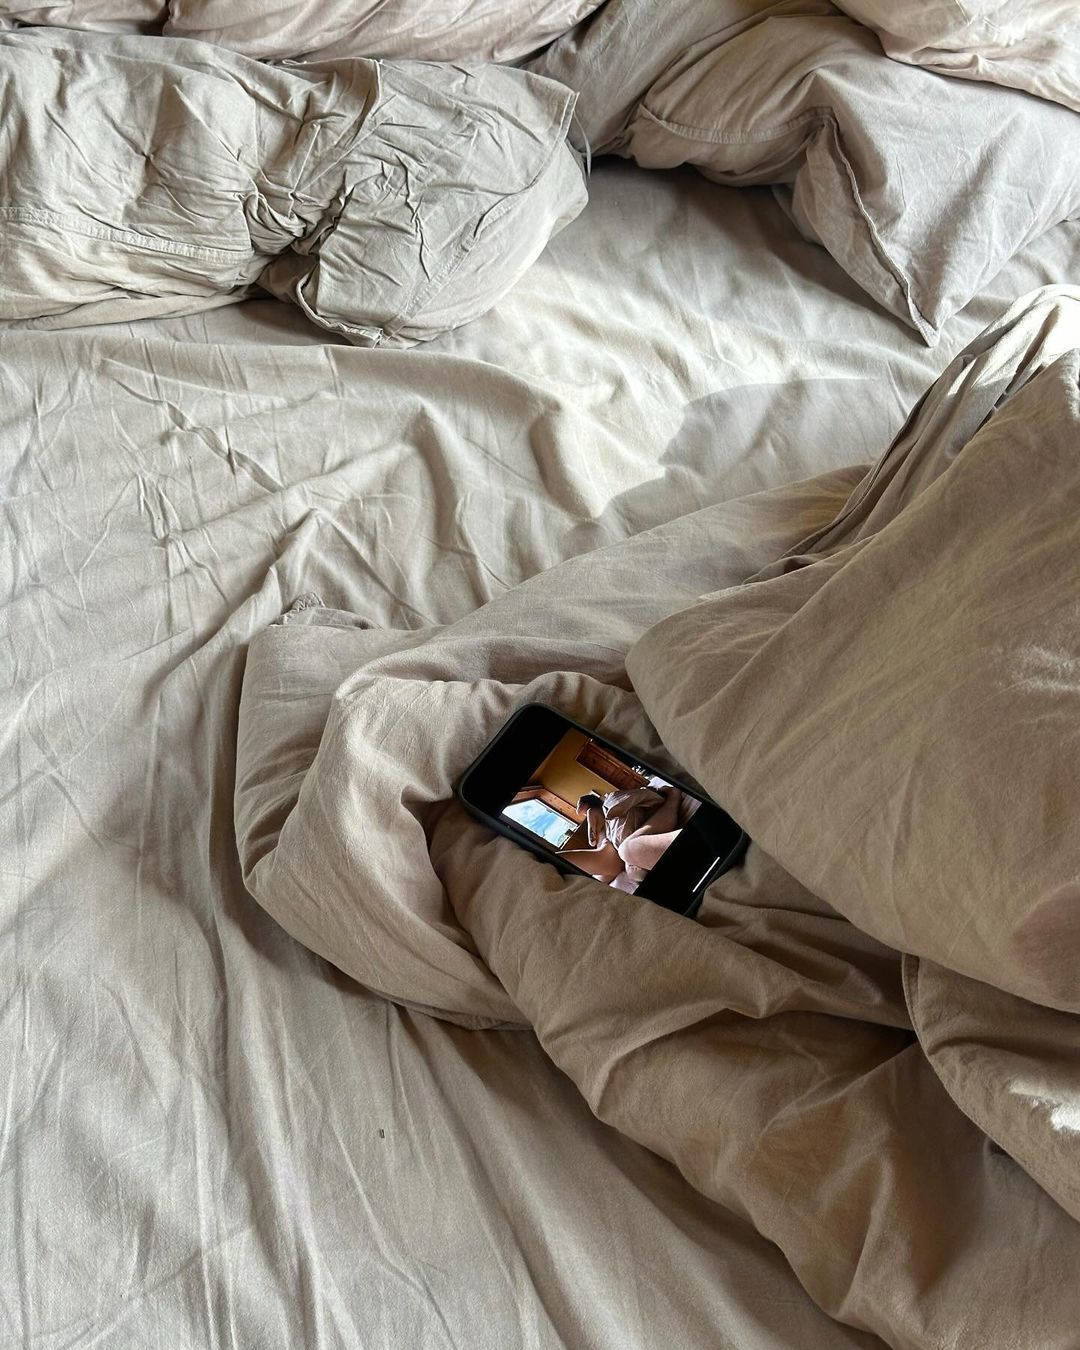 Надя Дорофєєва вразила своїх прихильників, опублікувавши фото топлес у ліжку.